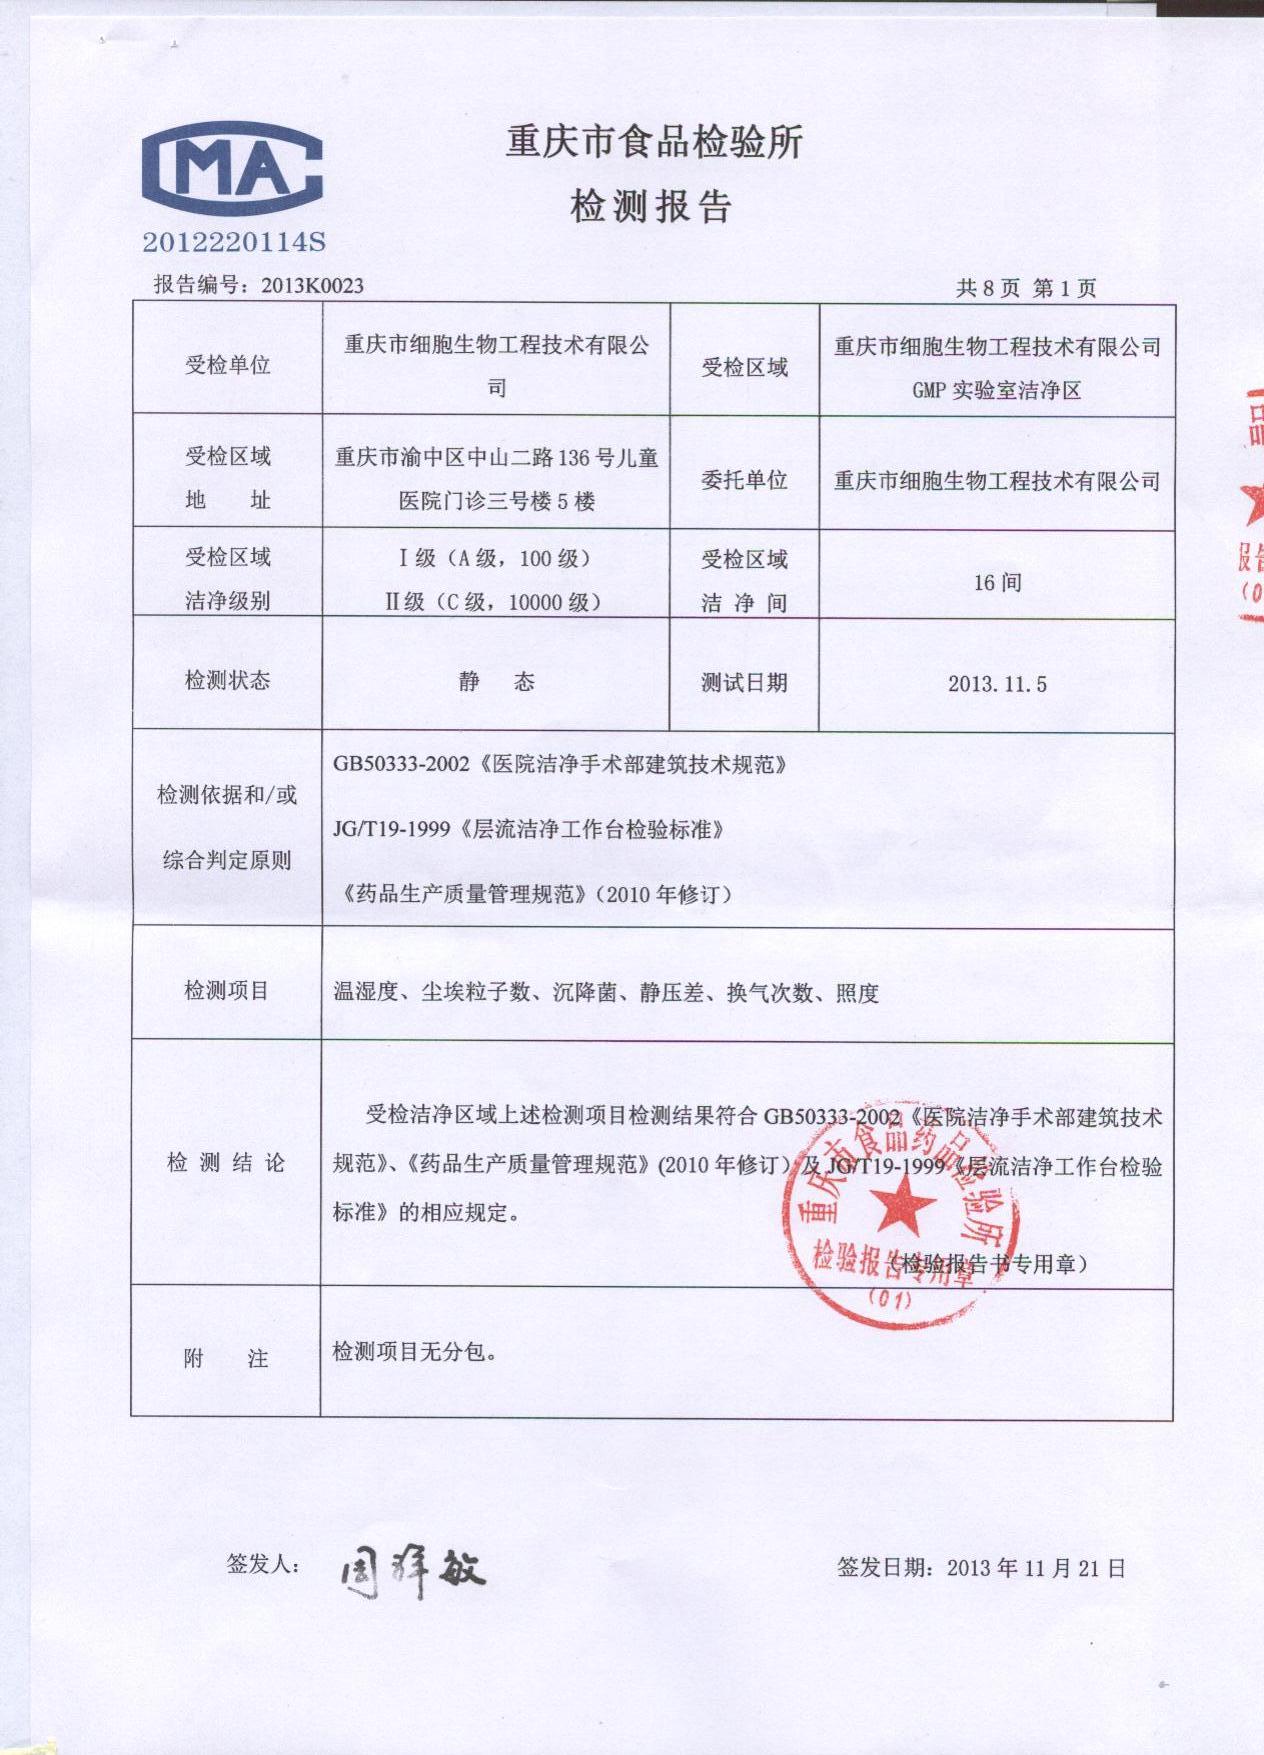 工程技术有限公司)获得了重庆市食品药品检验所颁发的洁净度检测报告